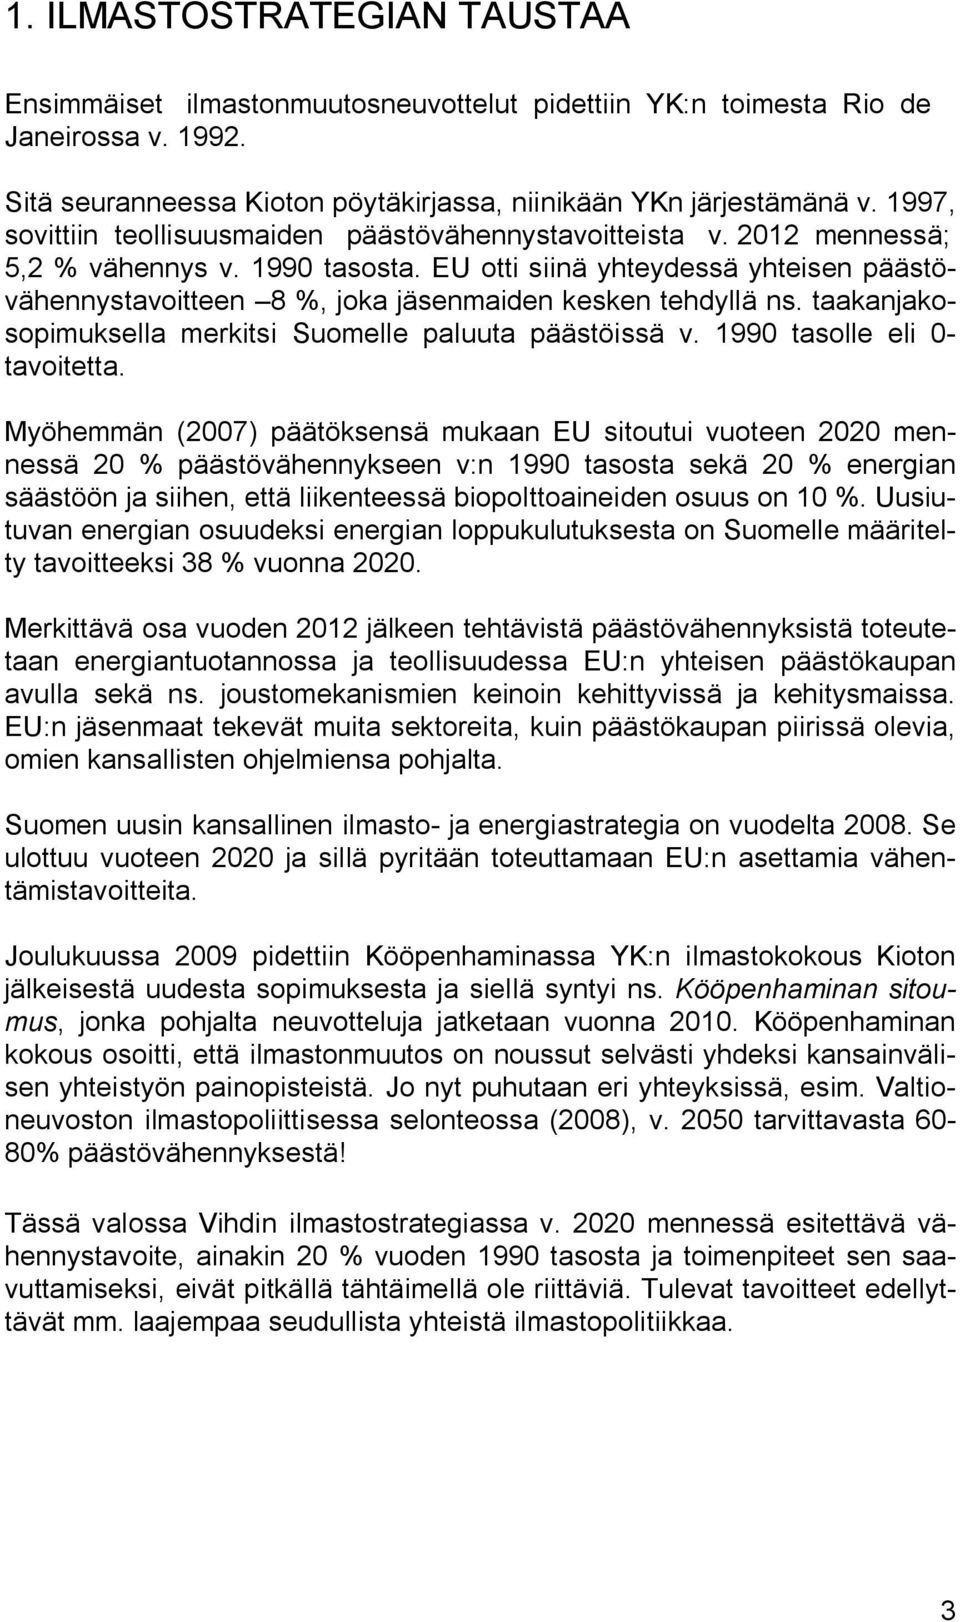 EU otti siinä yhteydessä yhteisen päästövähennystavoitteen 8 %, joka jäsenmaiden kesken tehdyllä ns. taakanjakosopimuksella merkitsi Suomelle paluuta päästöissä v. 1990 tasolle eli 0- tavoitetta.